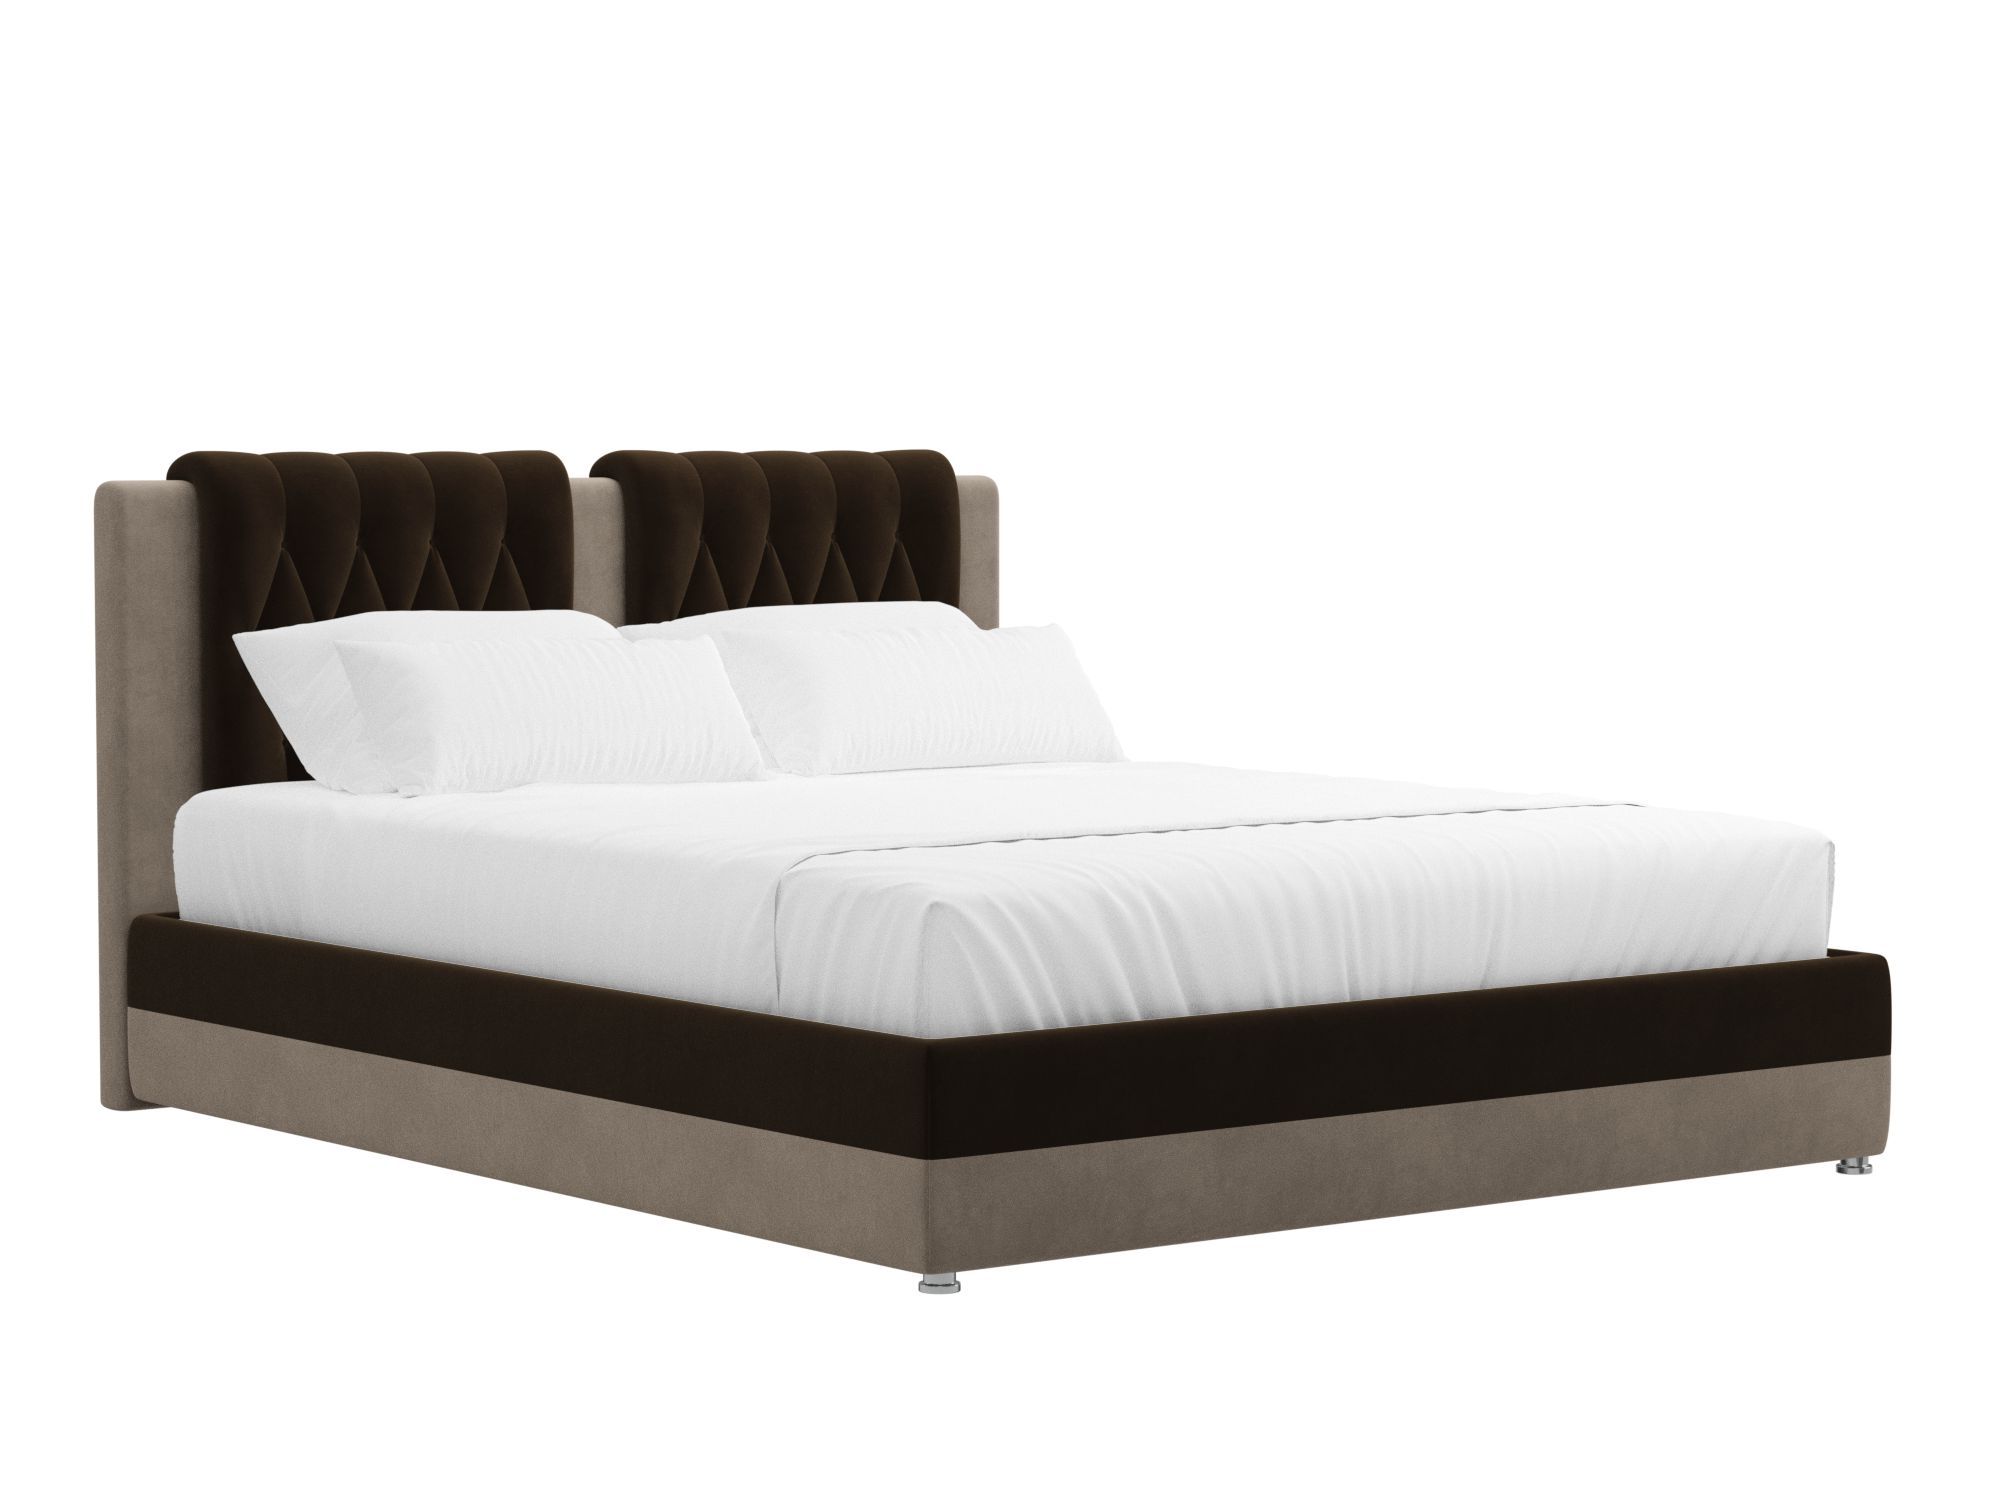 Кровать Камилла (160x200) Коричневый, Бежевый, ЛДСП кровать догма 160х200 слива валлис венге светлый коричневый бежевый лдсп мдф